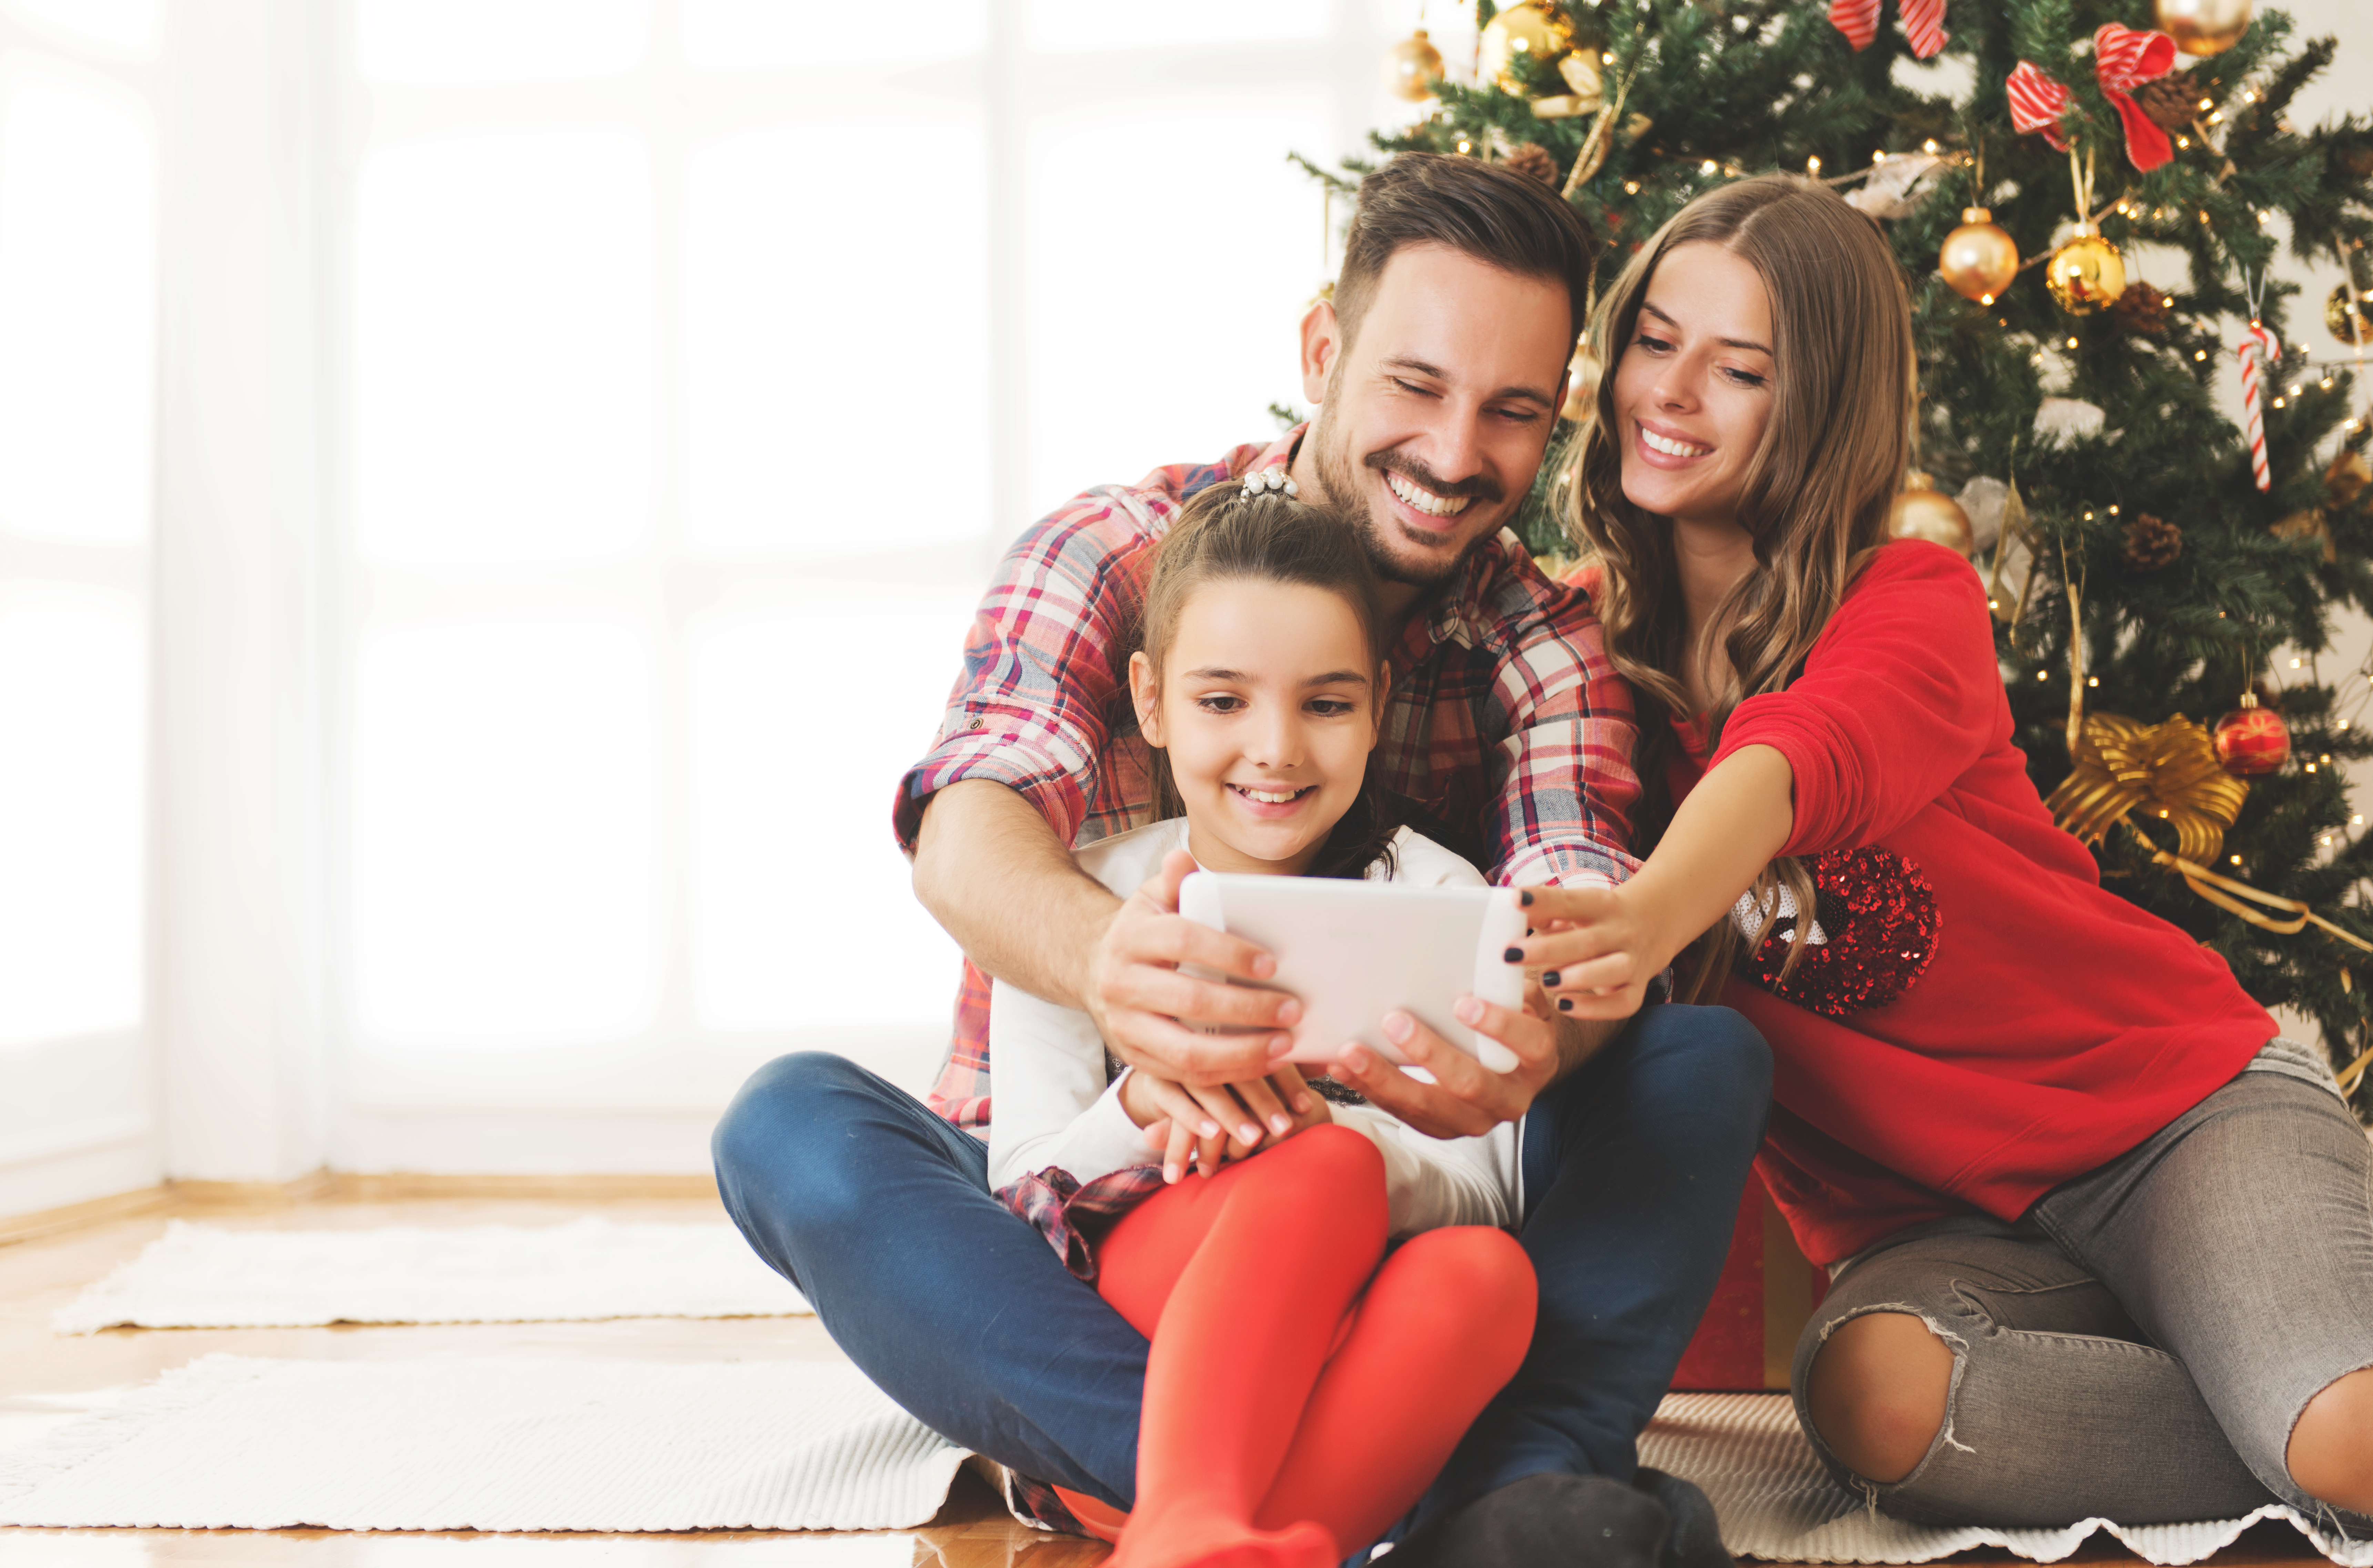 Une petite fille jouant avec un iPad en compagnie de son père et de sa mère avec un sapin de Noël en arrière-plan | Source : Shutterstock